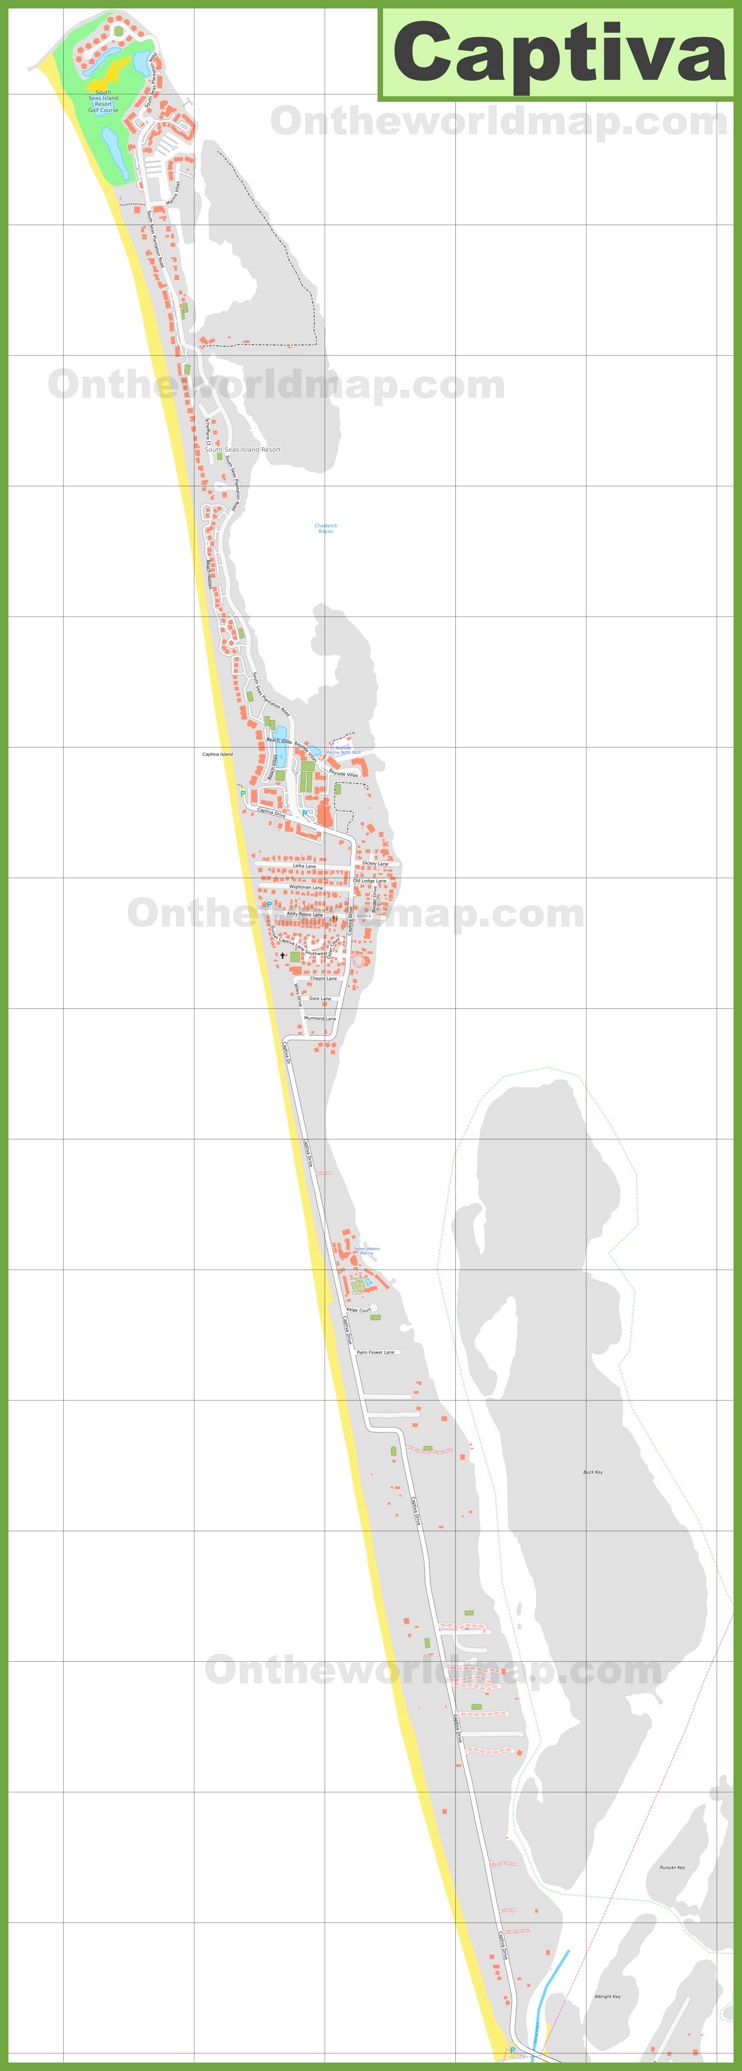 Detailed Map of Captiva Island